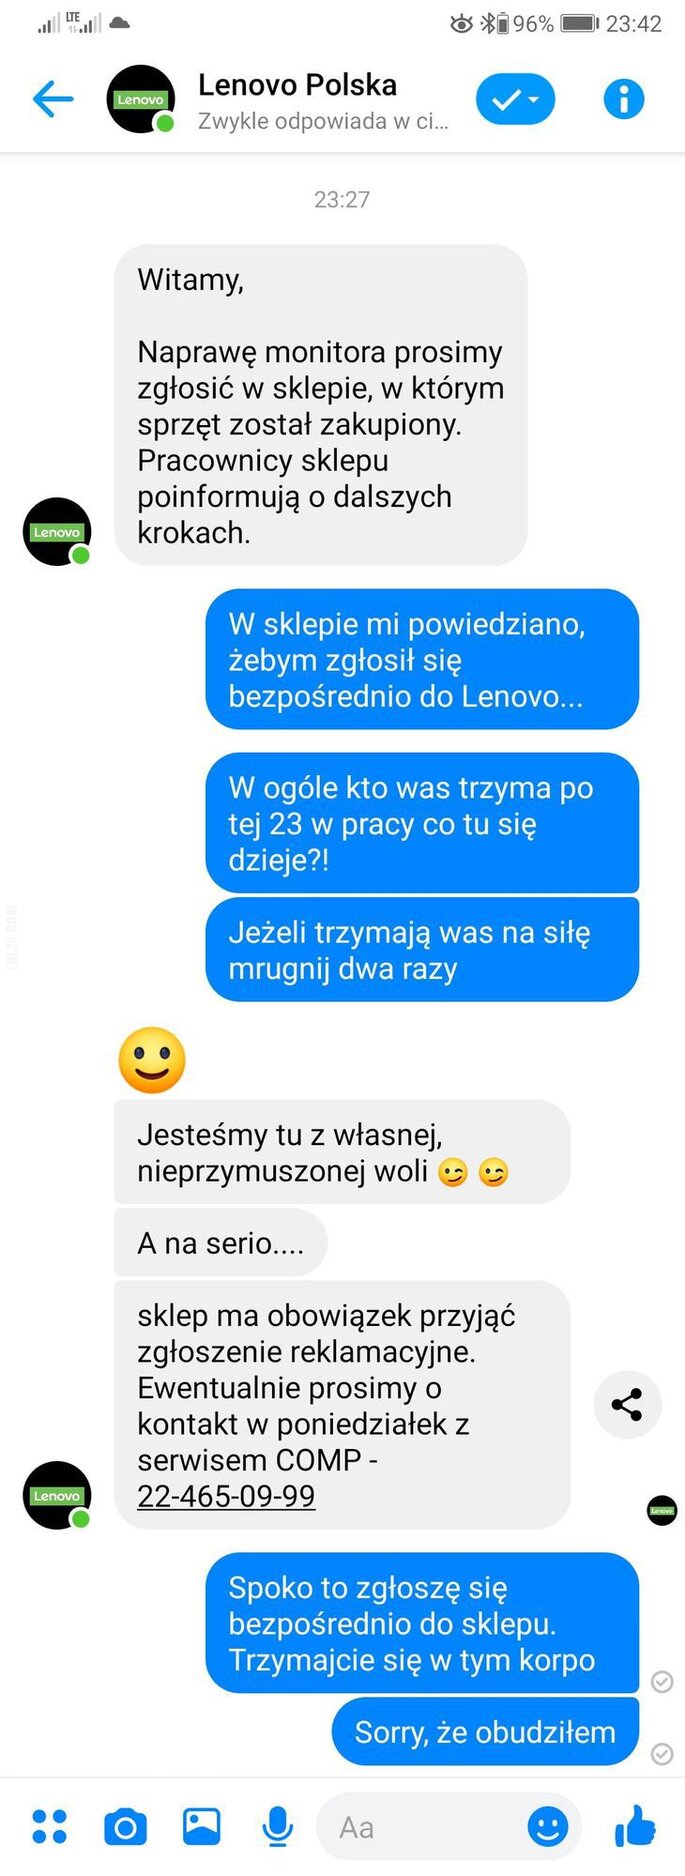 napis, reklama : Lenovo Polska